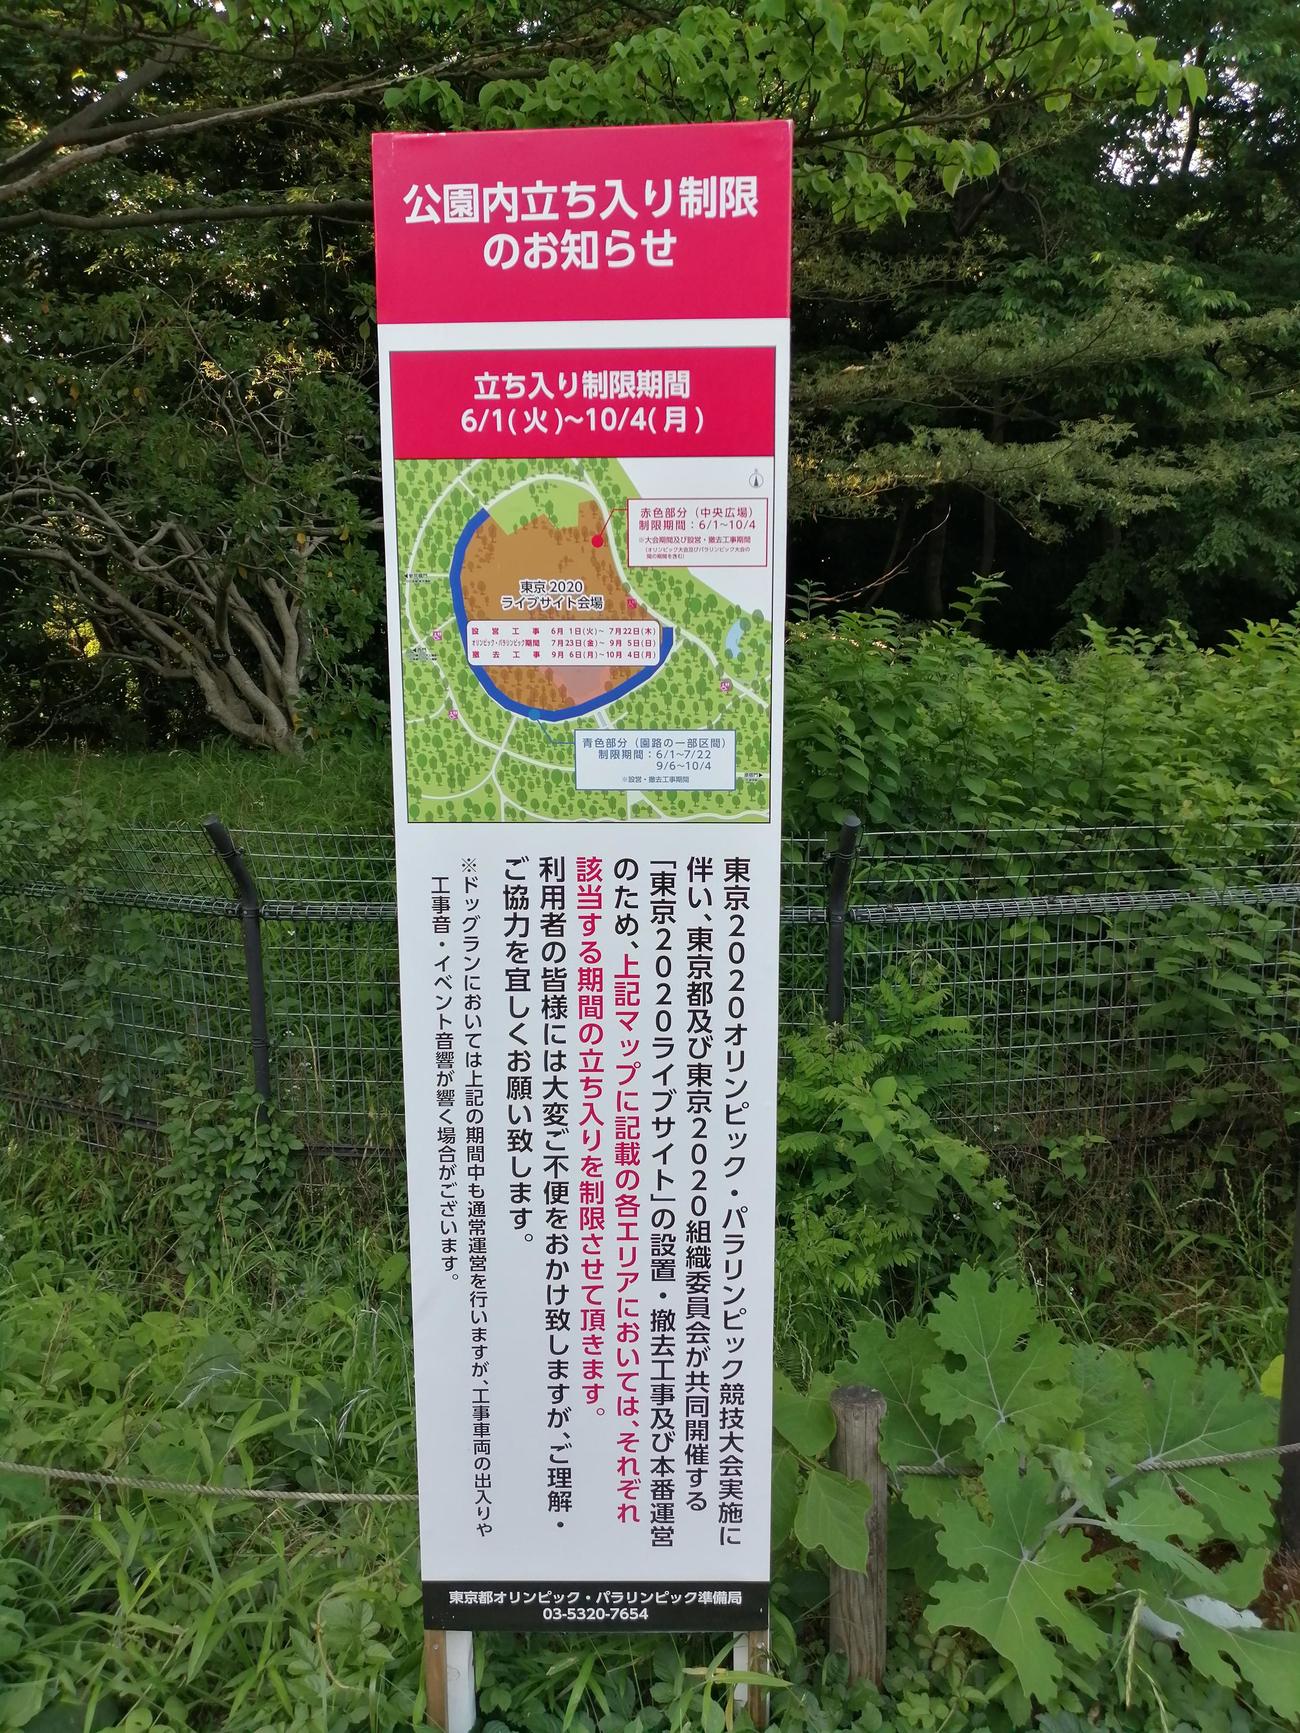 東京・渋谷区の都立代々木公園には、パブリックビューイング会場設置のための立ち入り制限の看板が多数置かれている